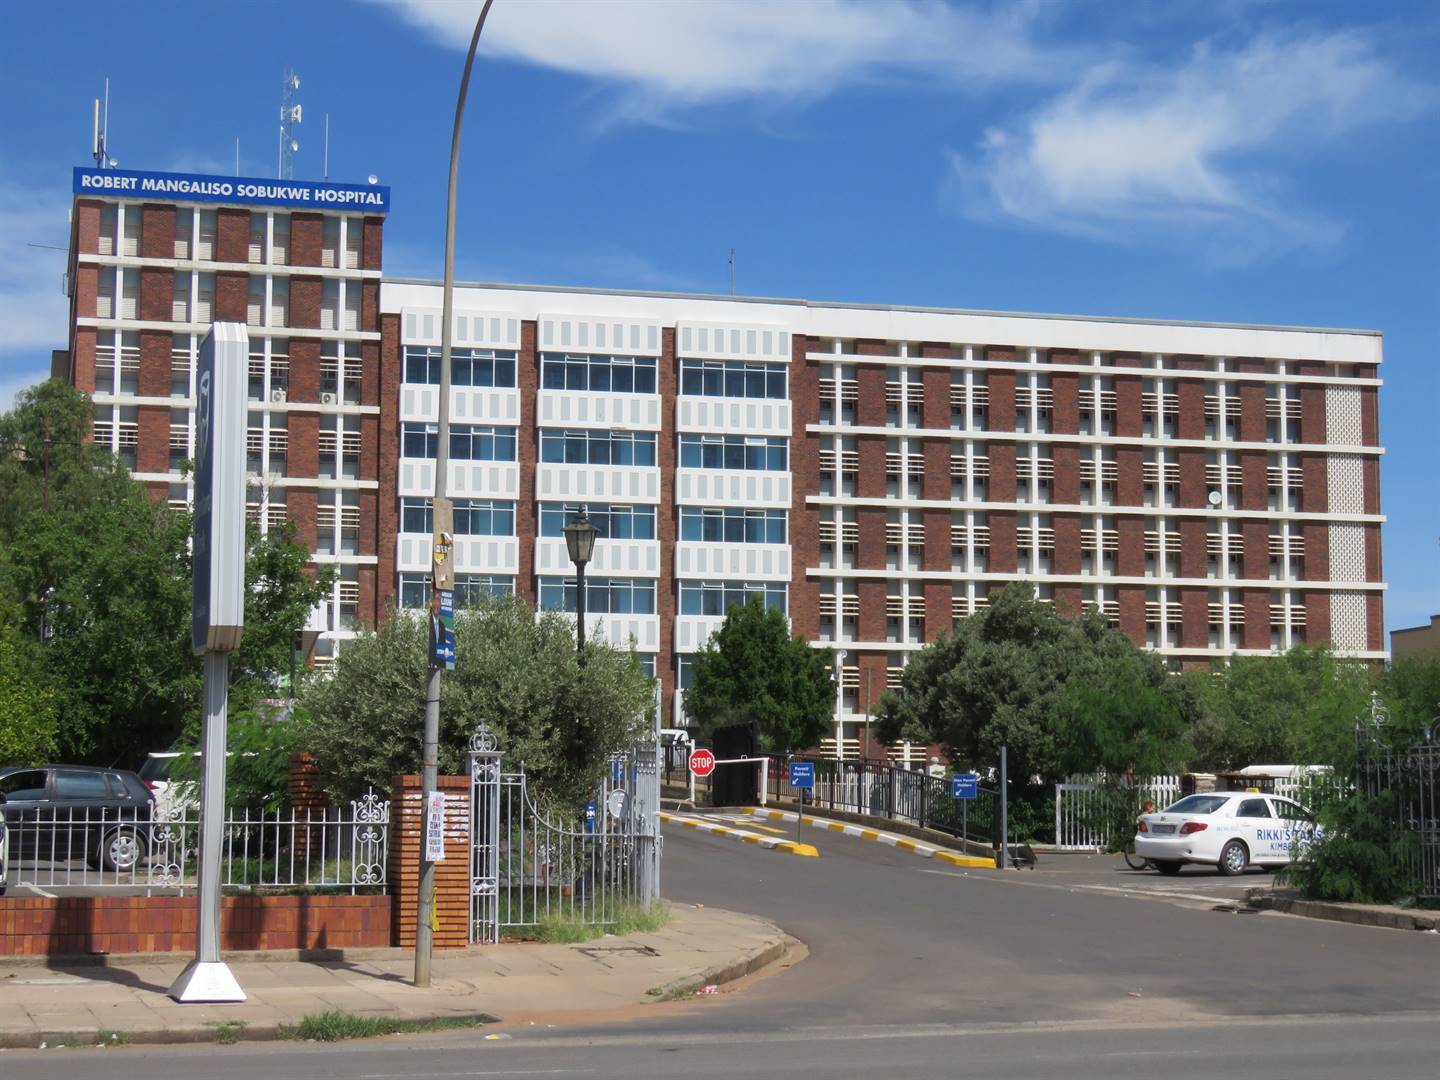 The Robert Mangaliso Sobukwe hospital in Kimberley.